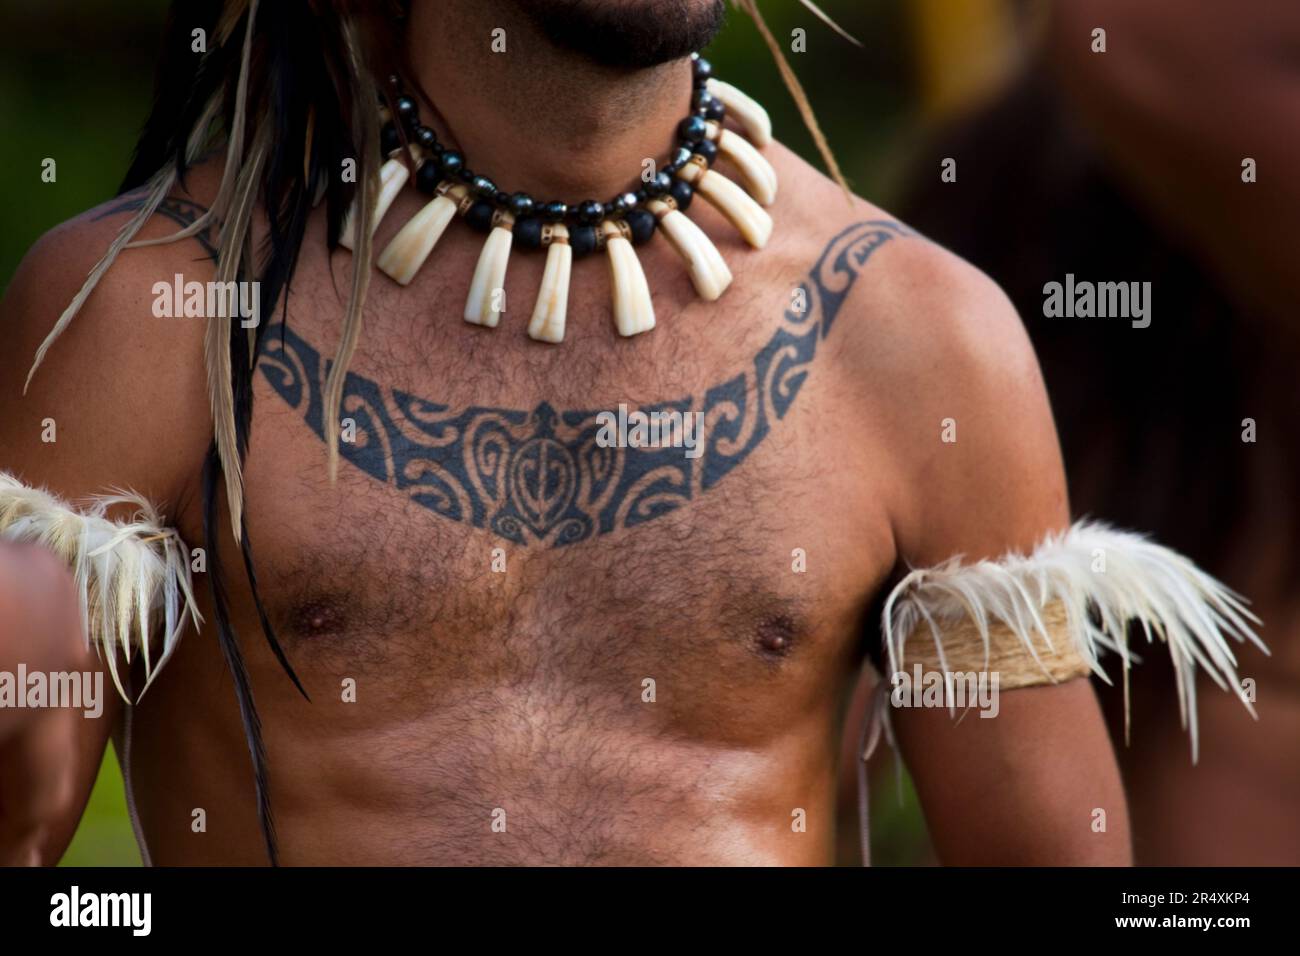 fiji tribal arm tattoos}' in Tattoos • Search in +1.3M Tattoos Now •  Tattoodo